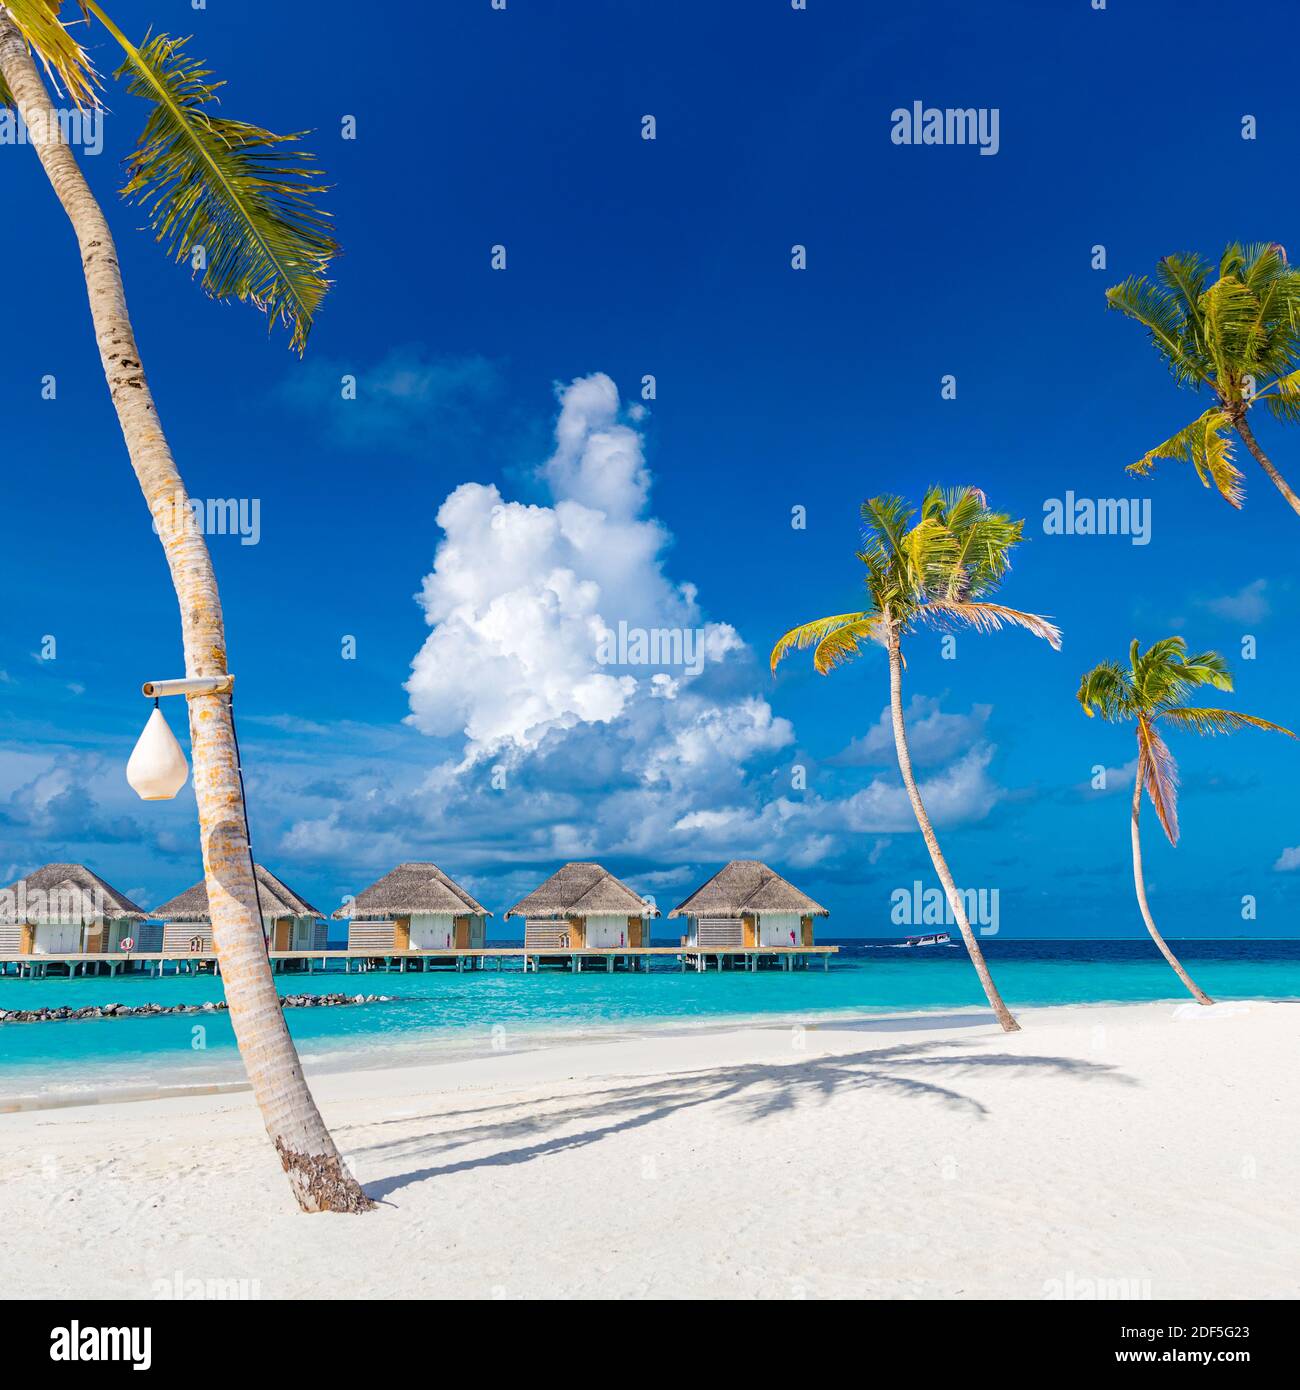 Perfekter Inselstrand mit Wasservillen, Luxusbungalows unter Palmen, in der Nähe des blauen Meeres. Unglaubliches Reiseziel, entspannte Strandresortlandschaft Stockfoto